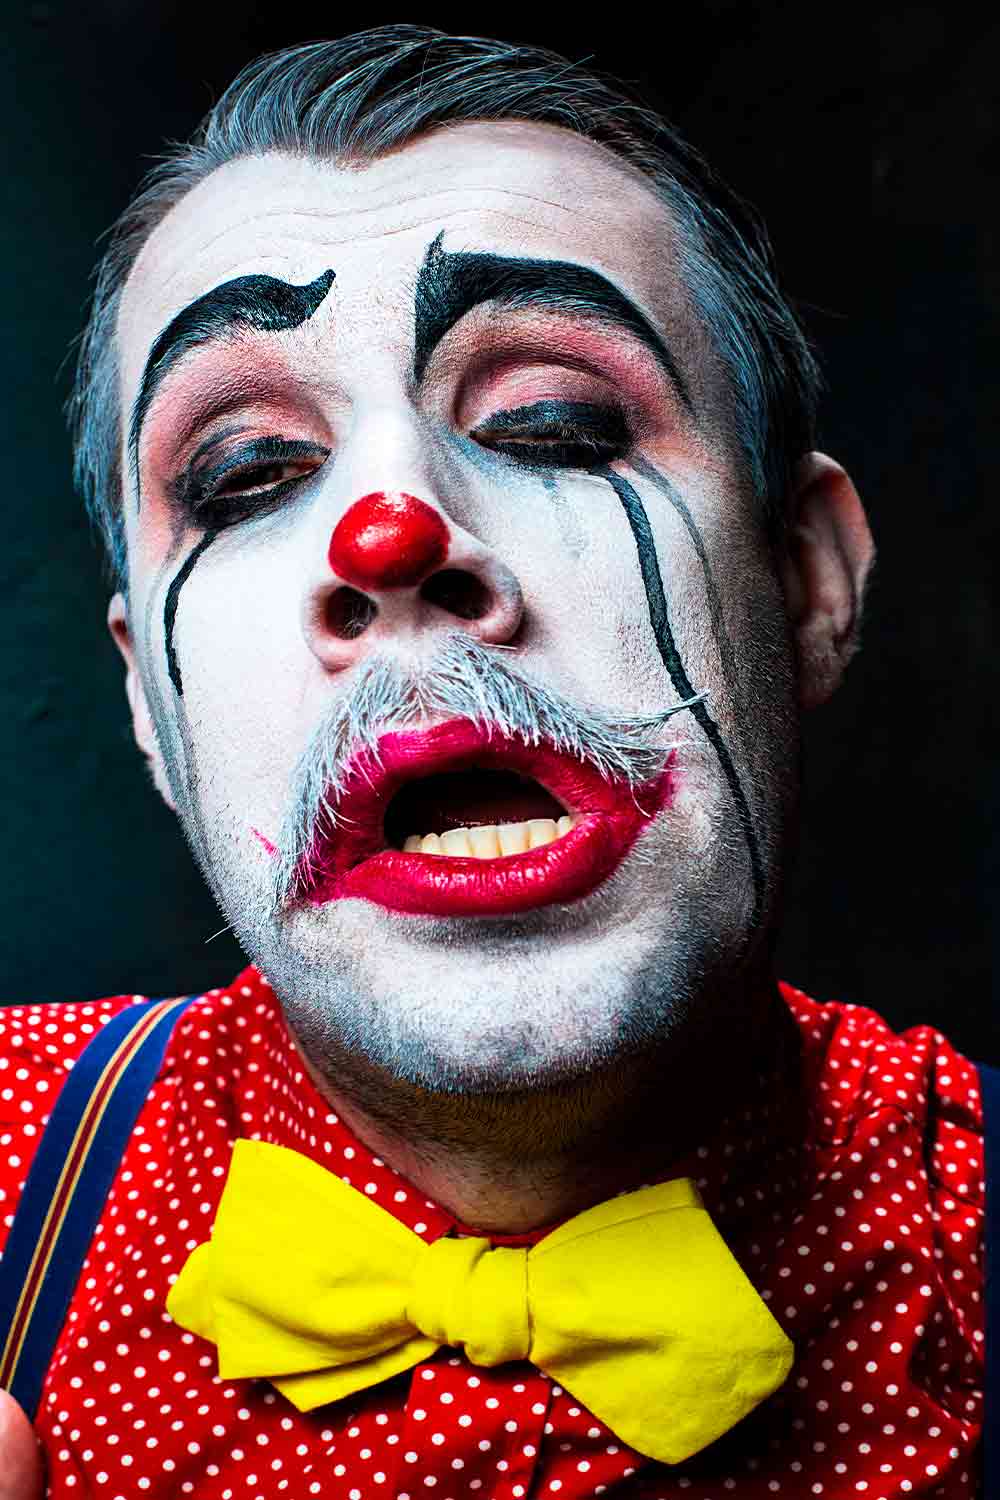 Sad Clown Simple Makeup #halloweenmakeupformen #menshalloweenmakeup